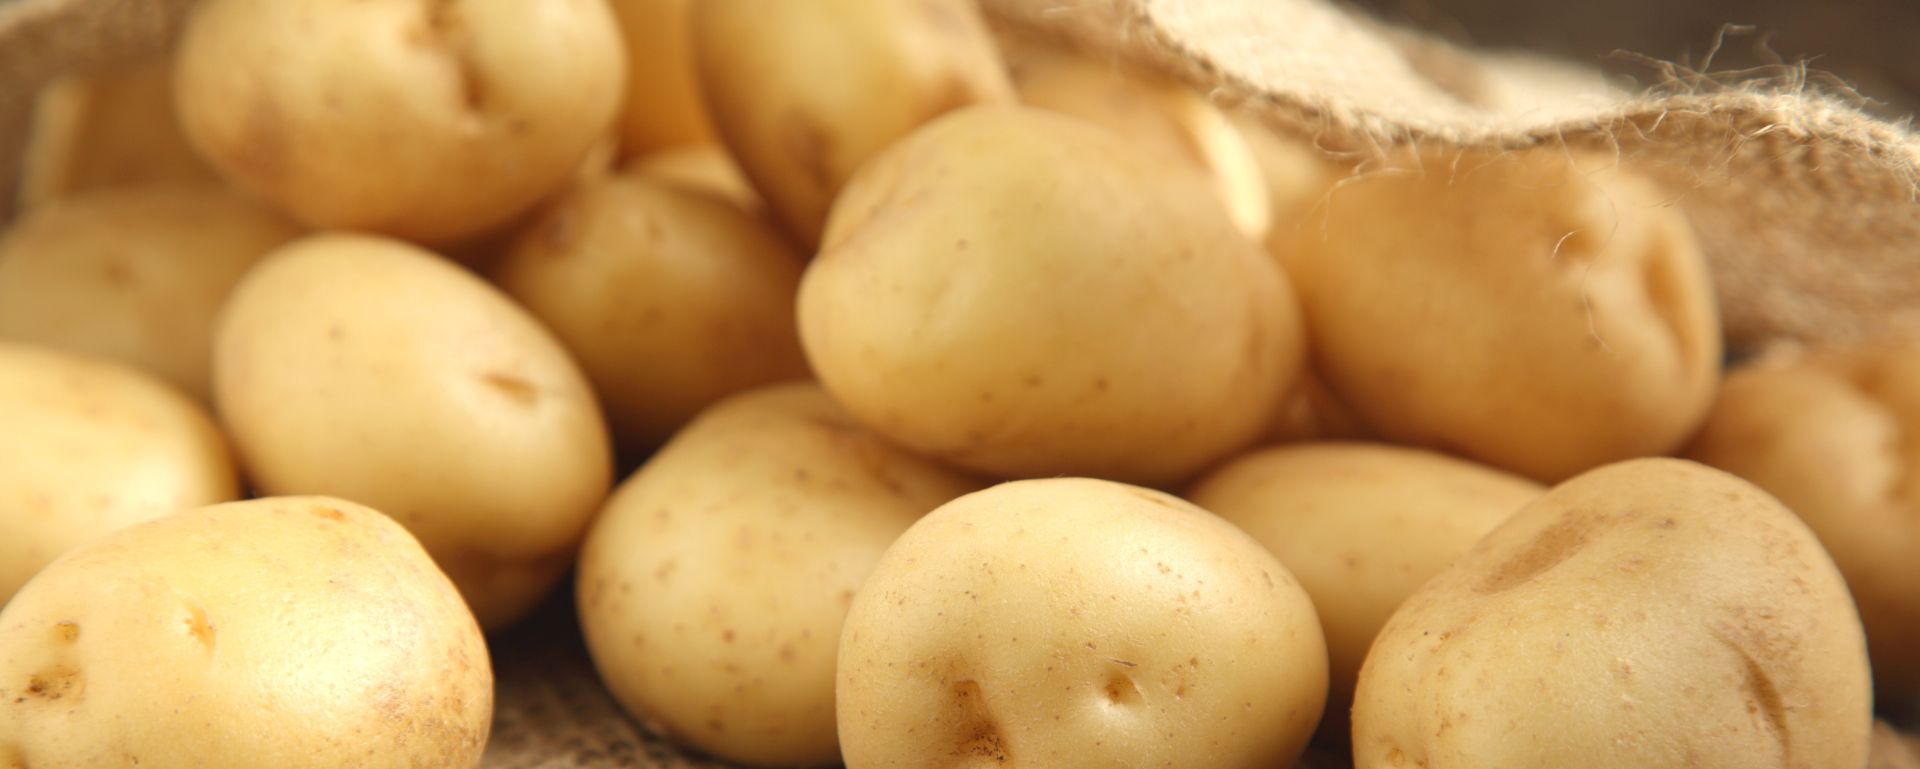 Europäische Kartoffelbranche bündelt Fachwissen